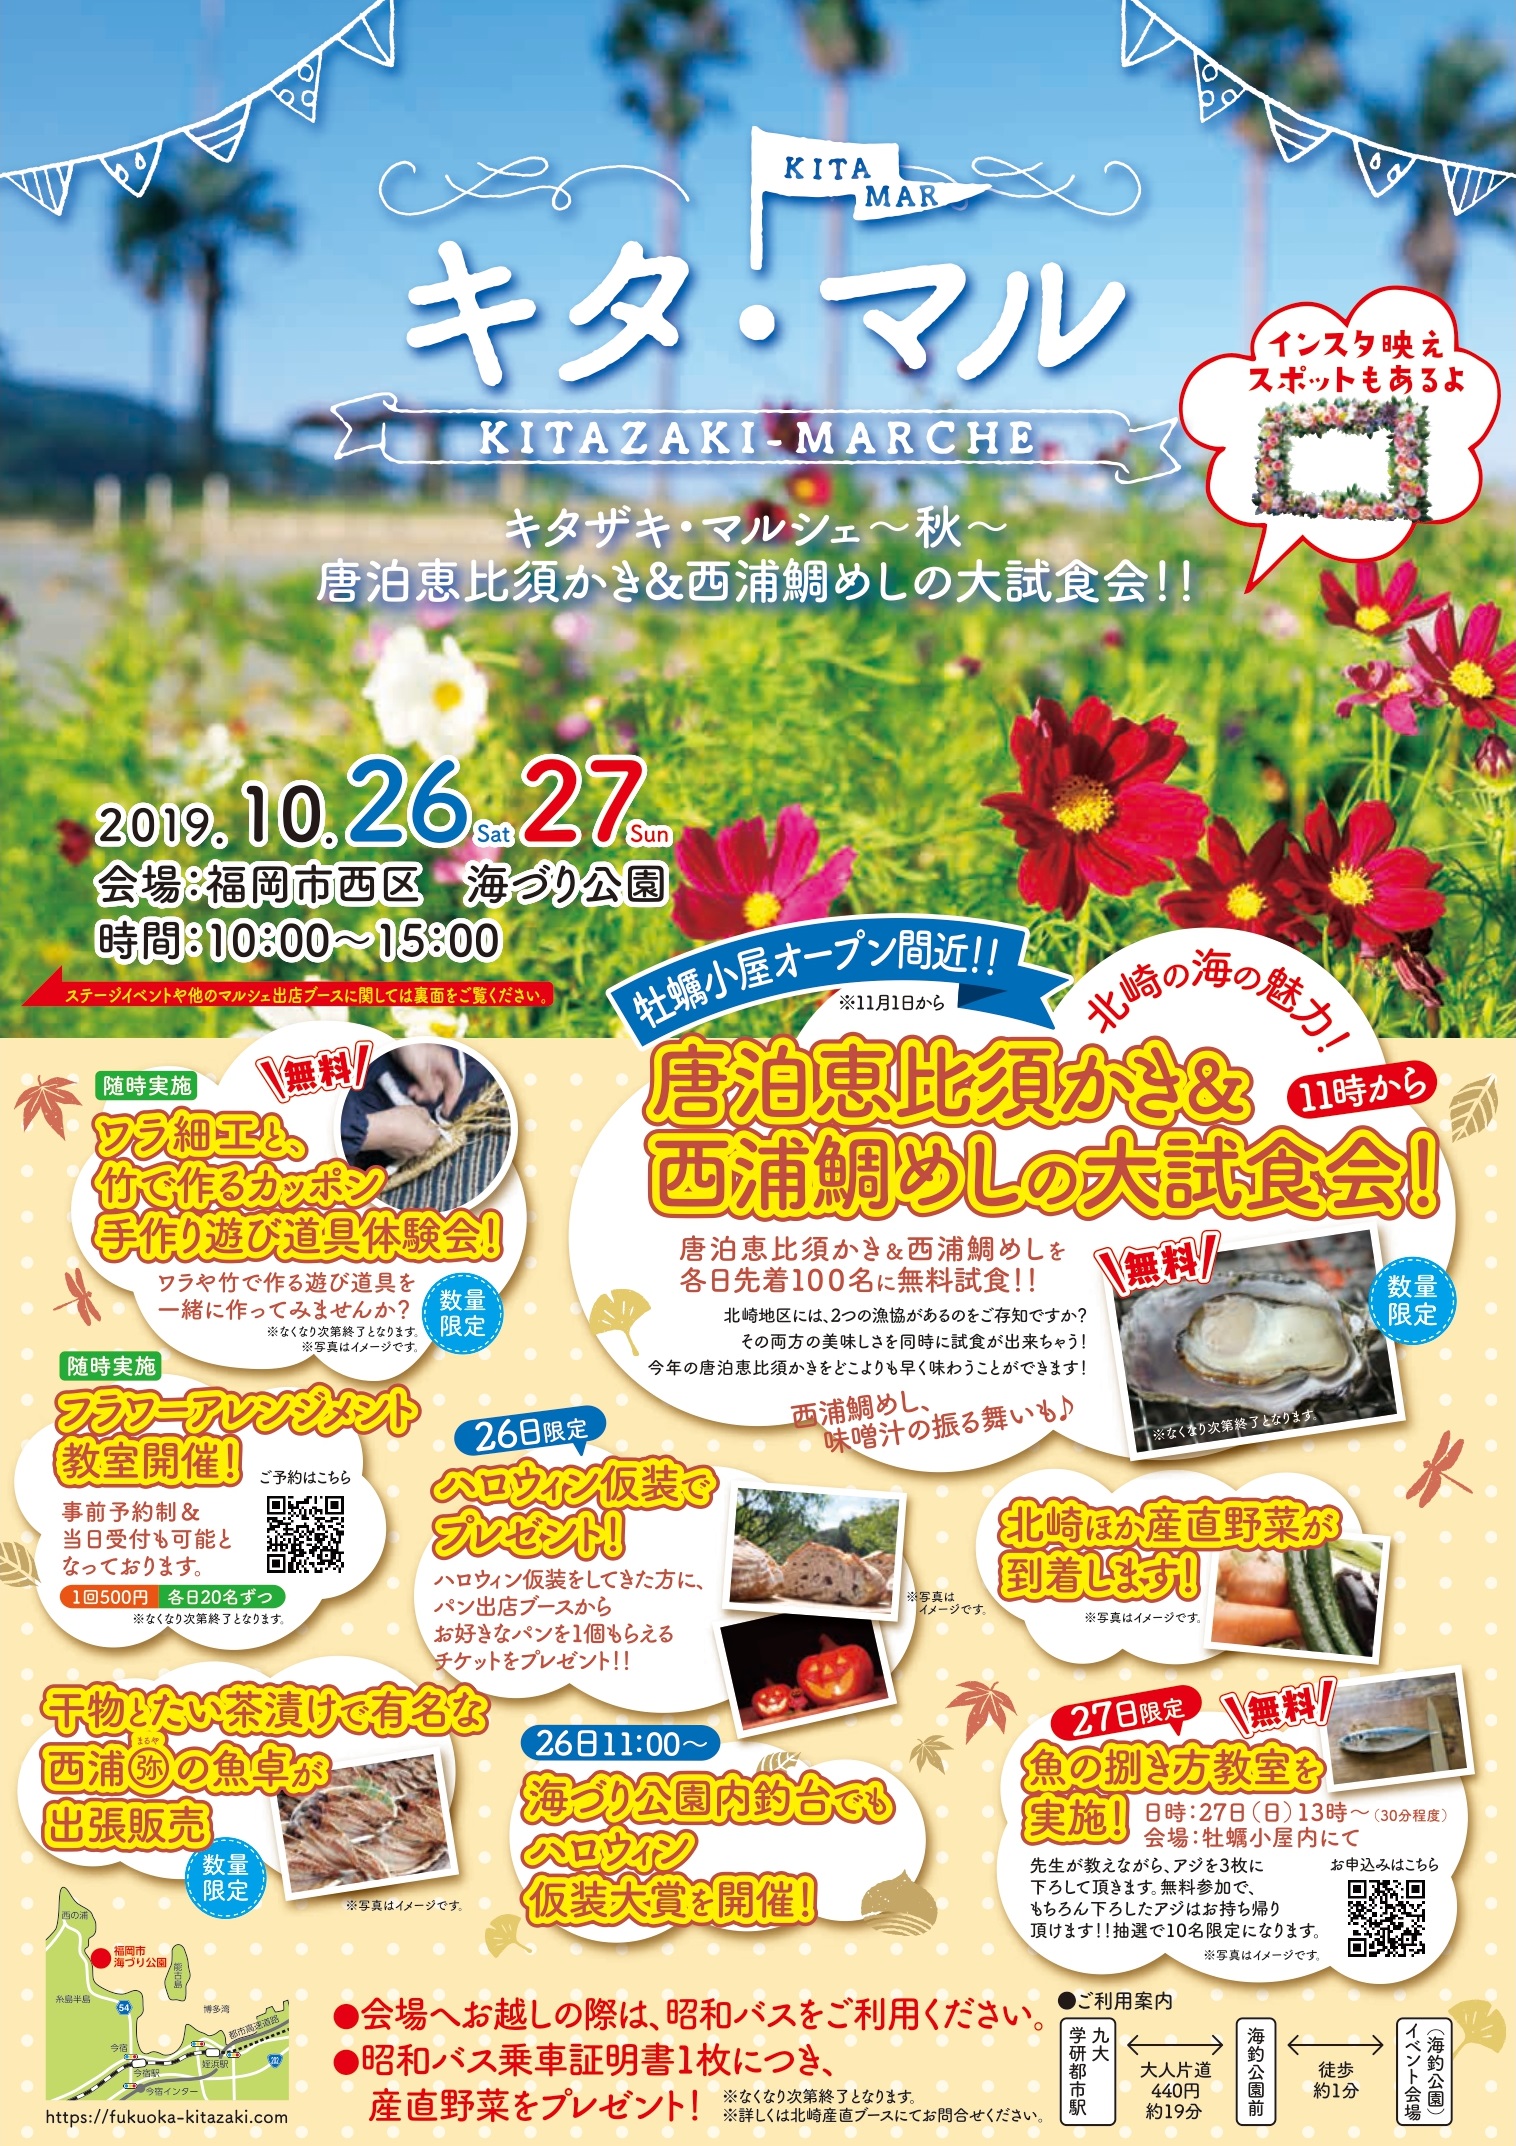 2019.10.27 sun 福岡市西区のハンドメイドイベント「キタザキマルシェ」に出展します